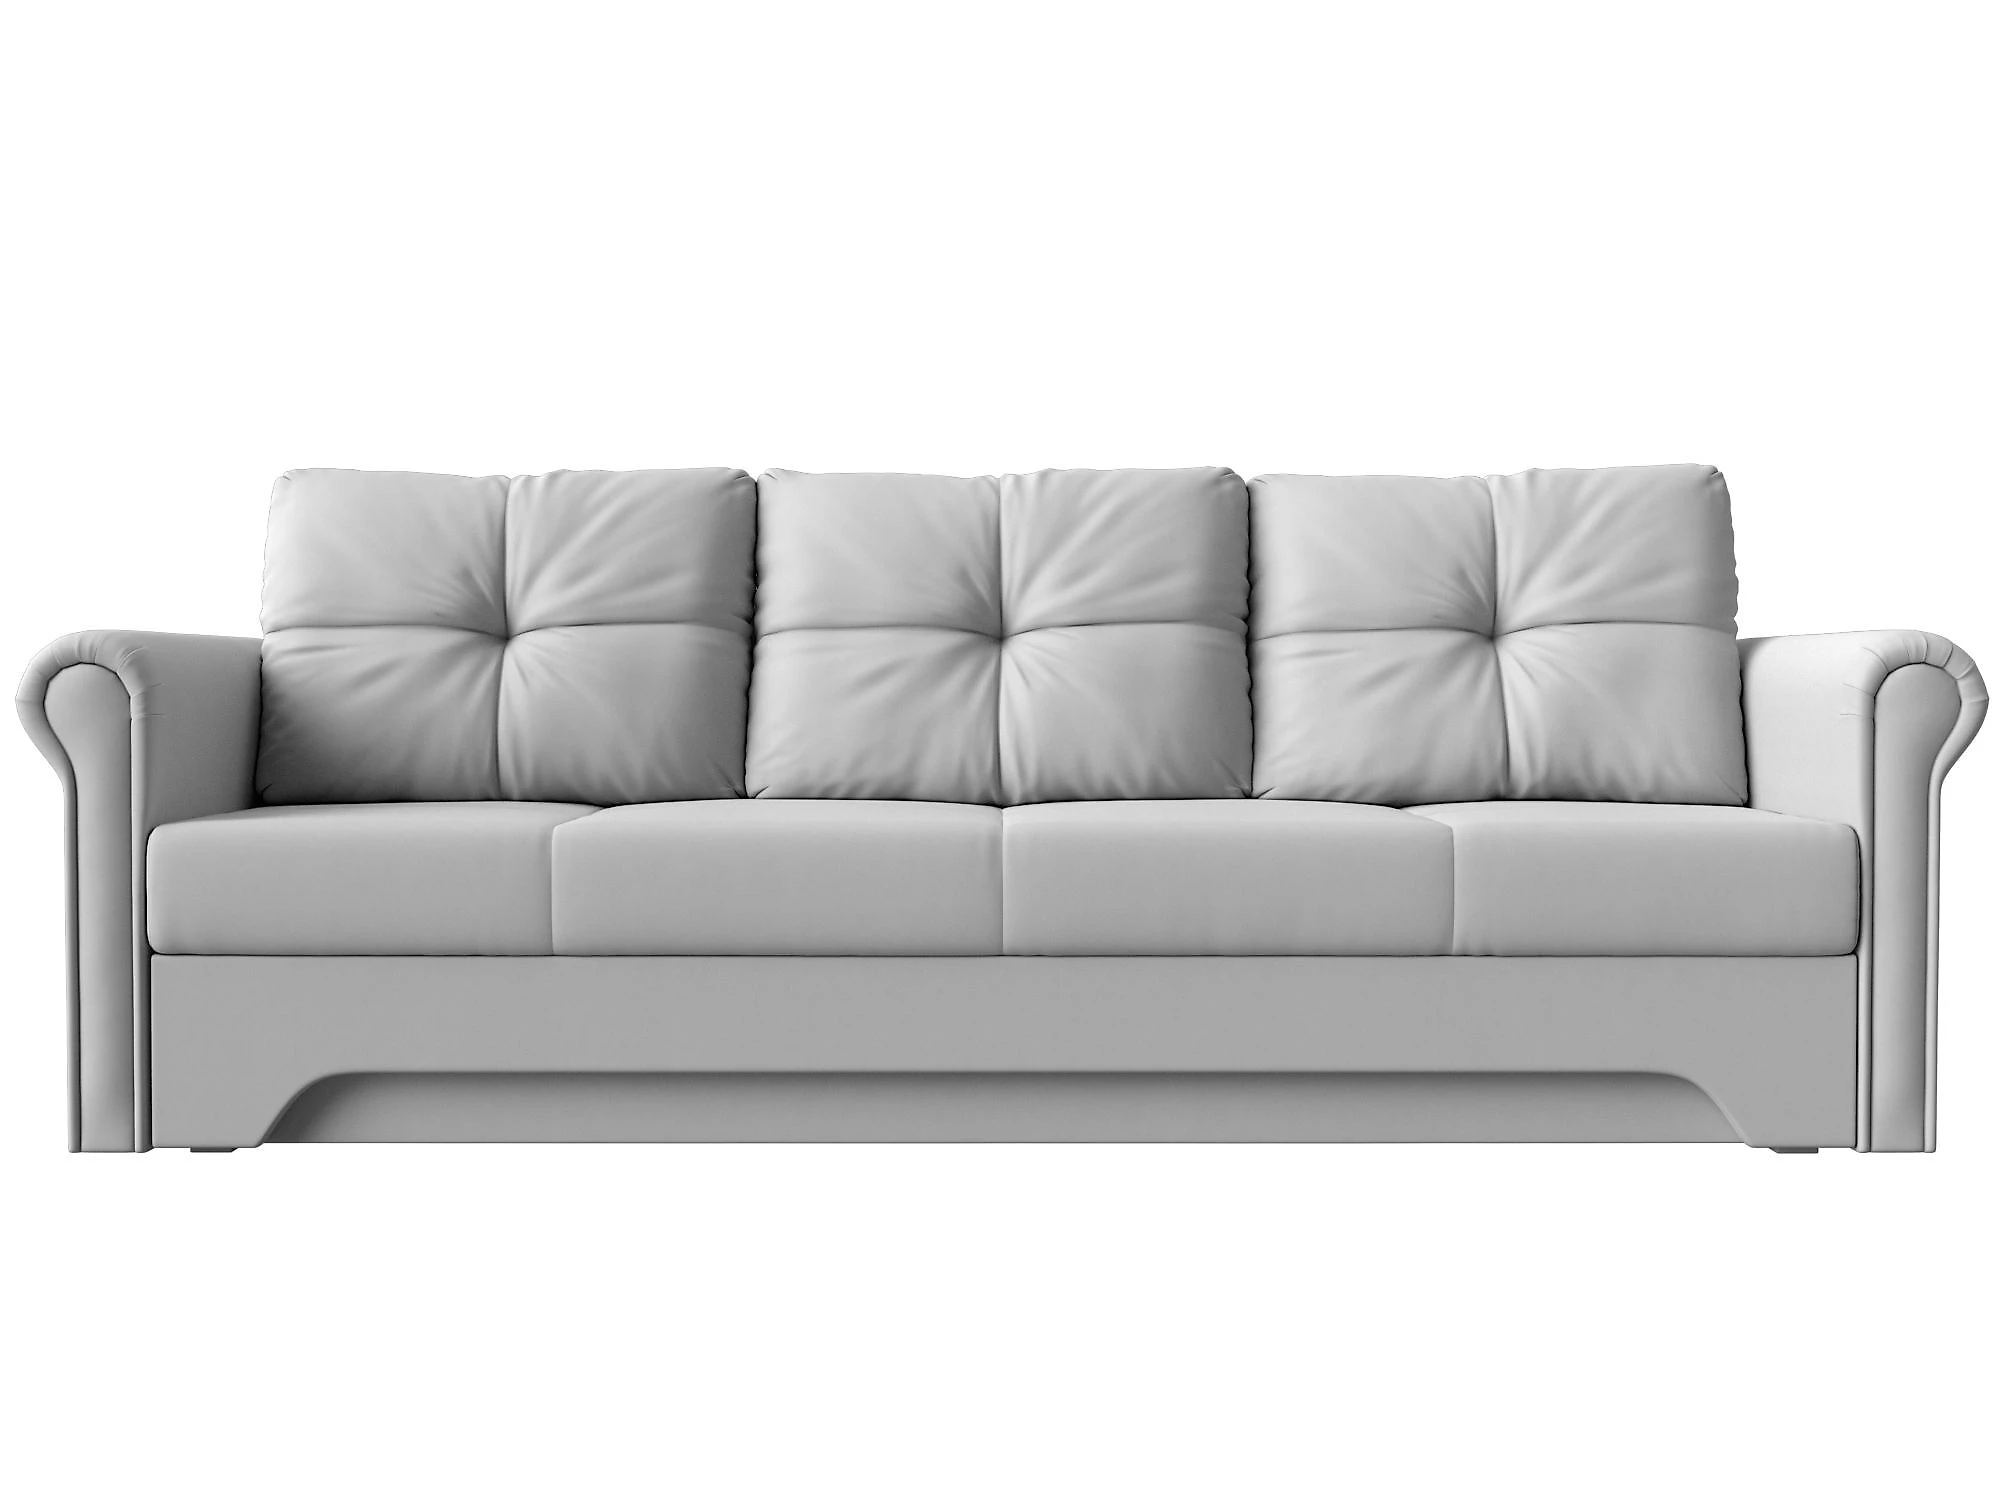  кожаный диван еврокнижка Европа Дизайн 31